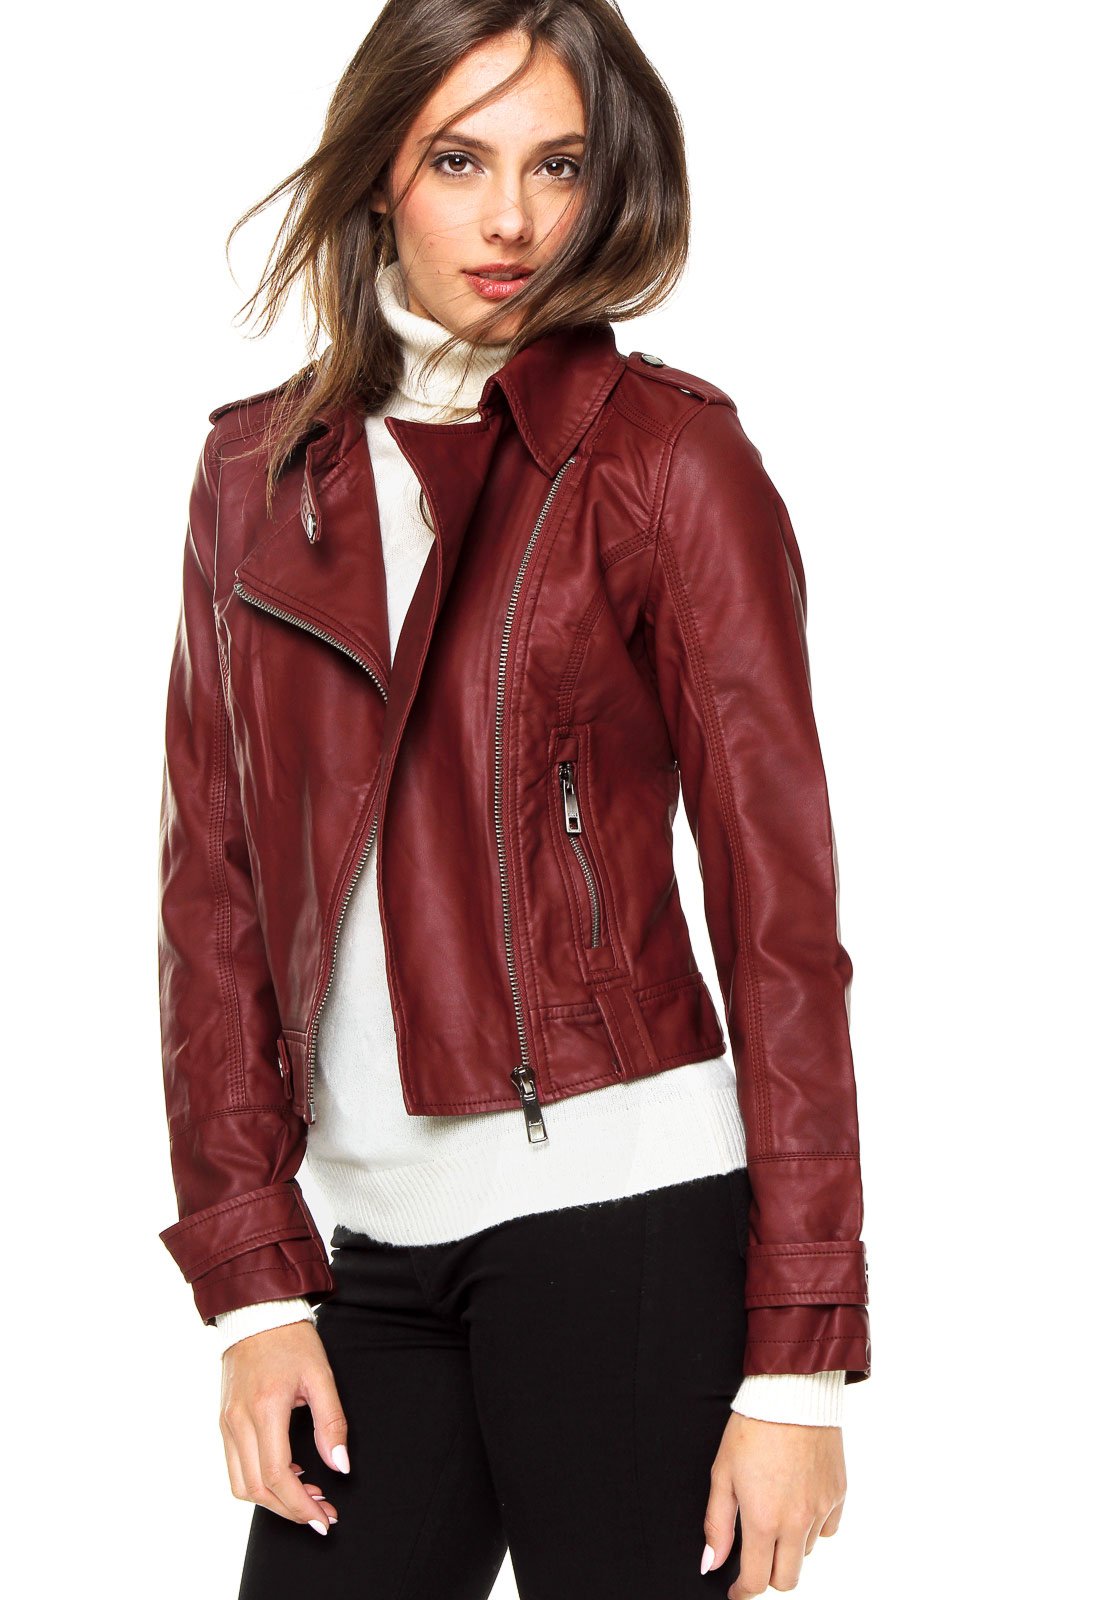 jaqueta leather